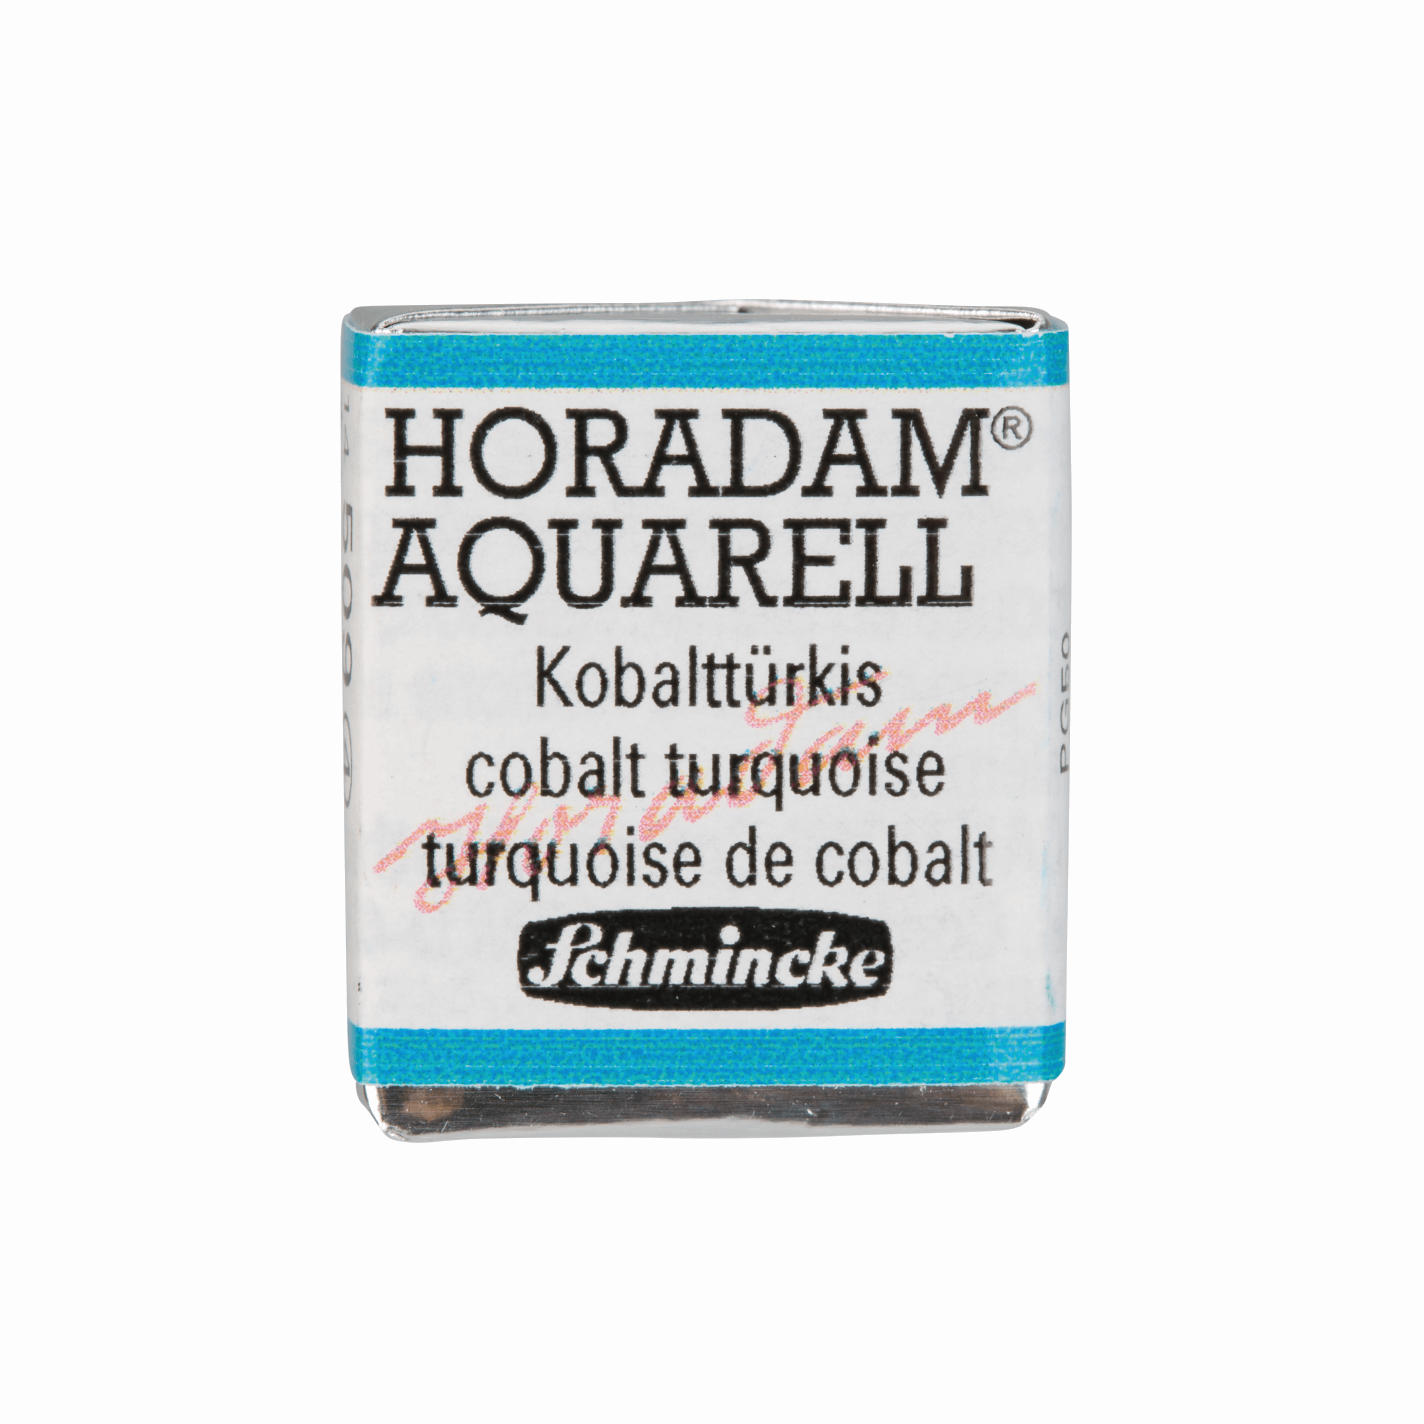 Schmincke Horadam Aquarell pans 1/2 pan Cobalt Turquoise